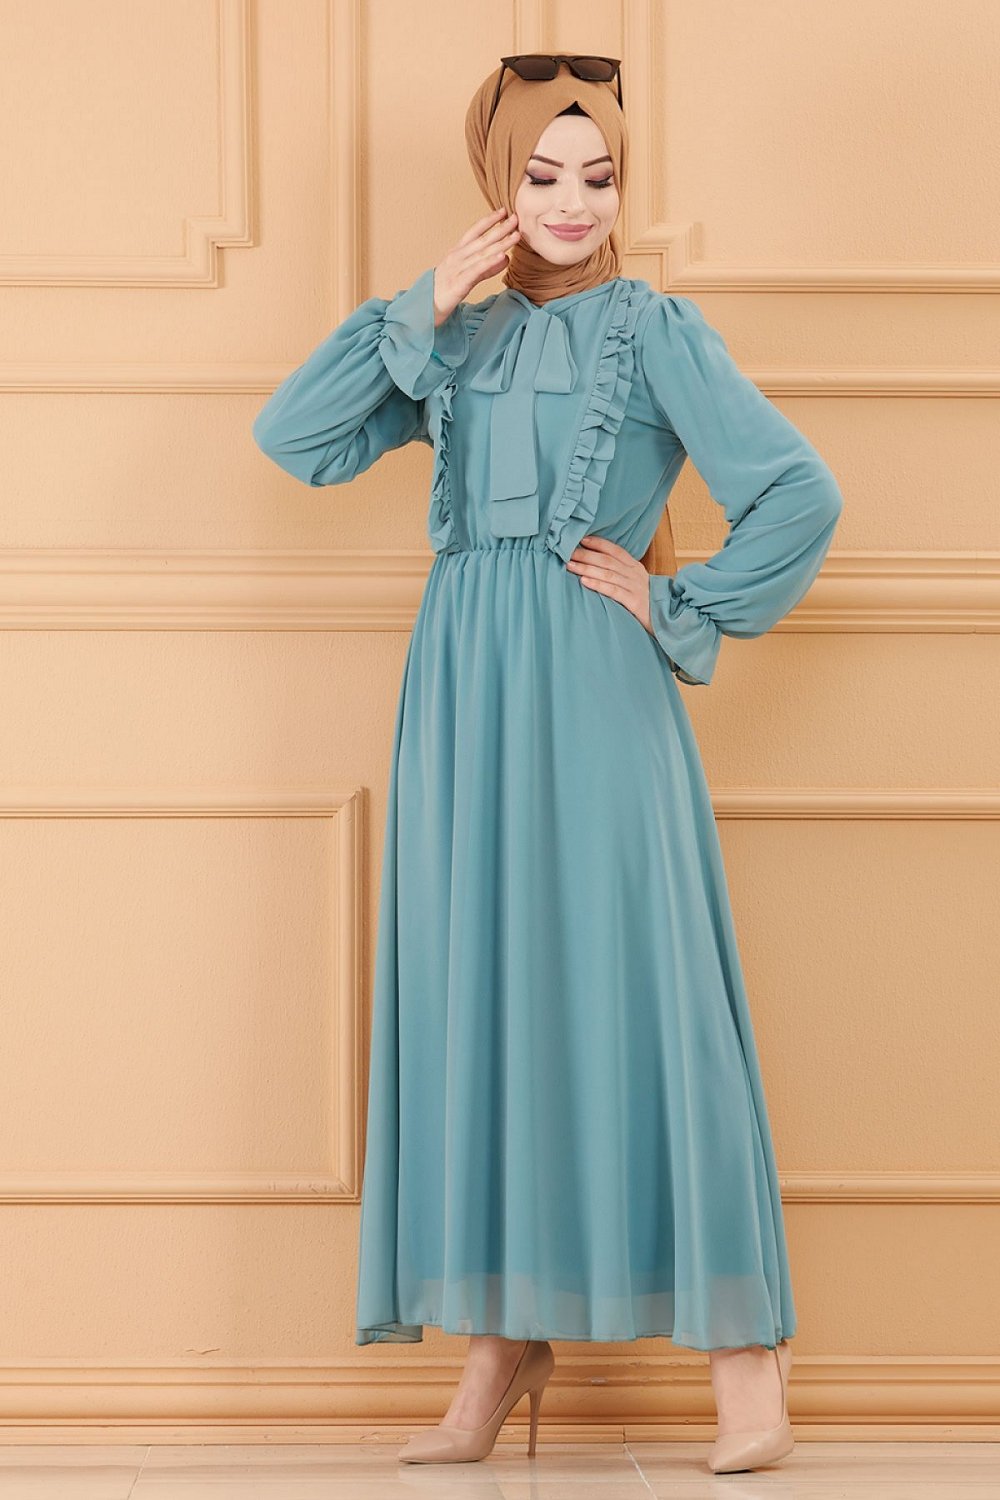 Robe de soirée chic pour femme (Tenue style habillé pour hijab) - Couleur  indigo clair - Prêt à porter et accessoires sur